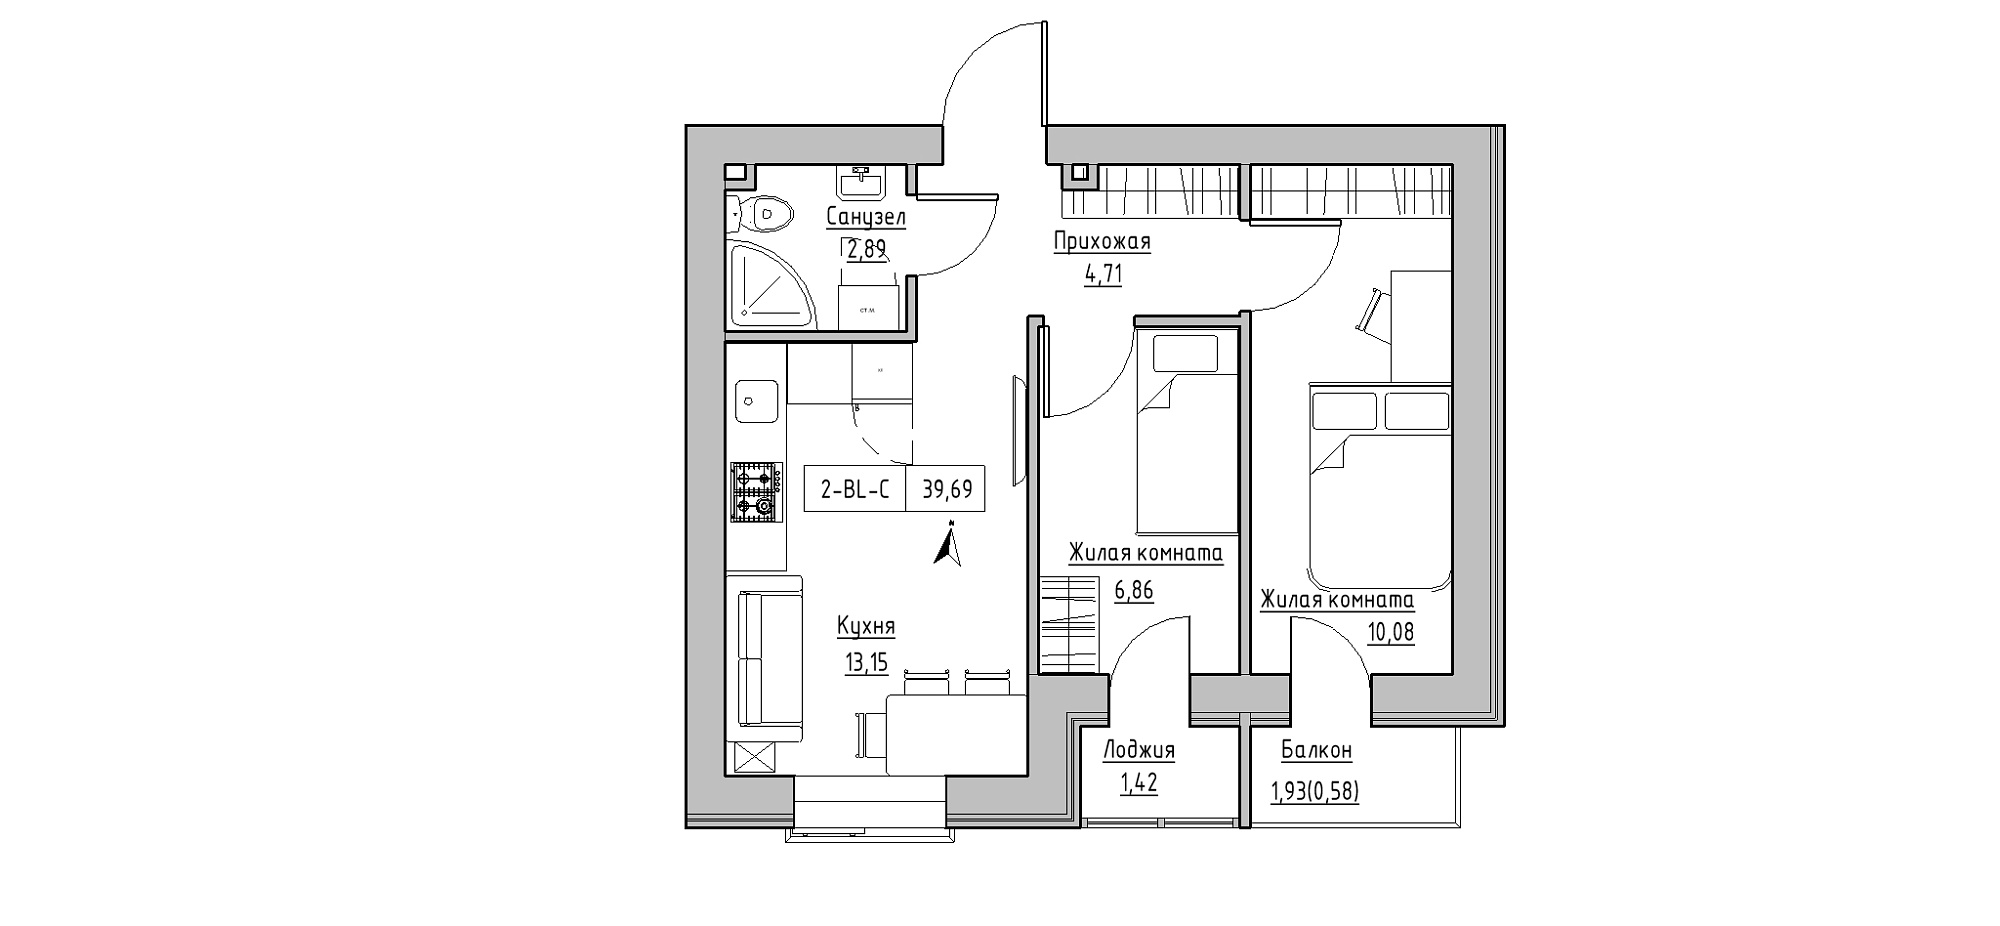 Планировка 2-к квартира площей 39.69м2, KS-020-04/0005.